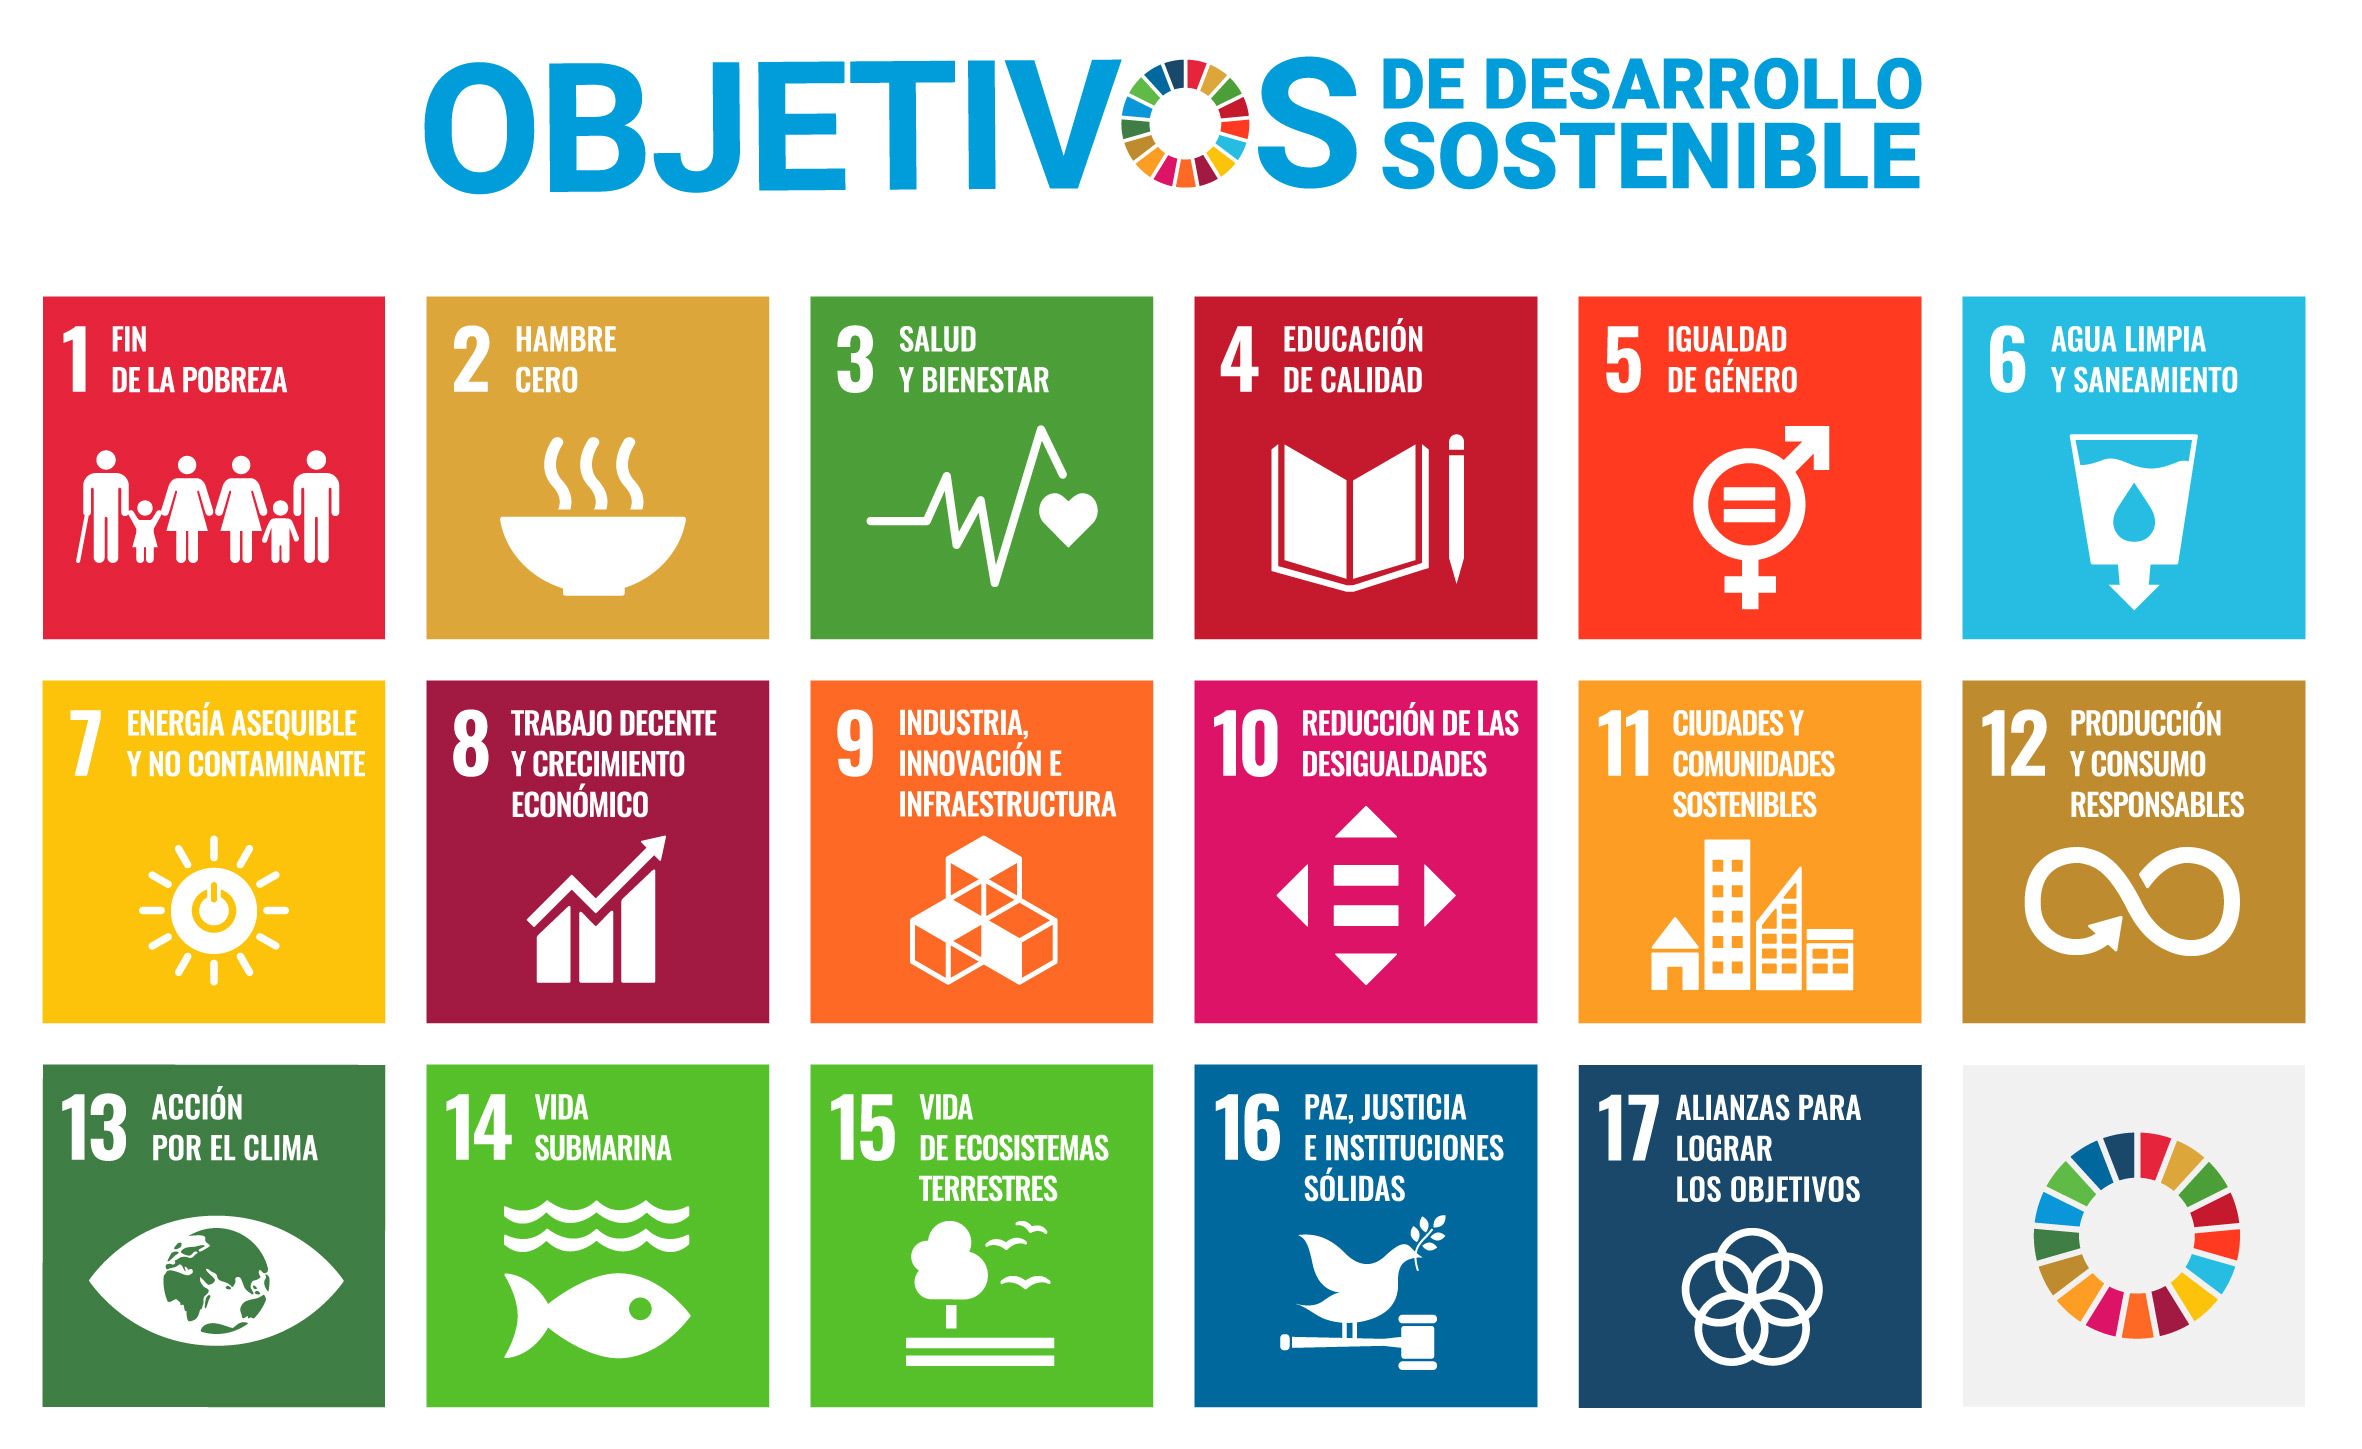 Contribución a los Objetivos de Desarrollo Sostenible (ODS)